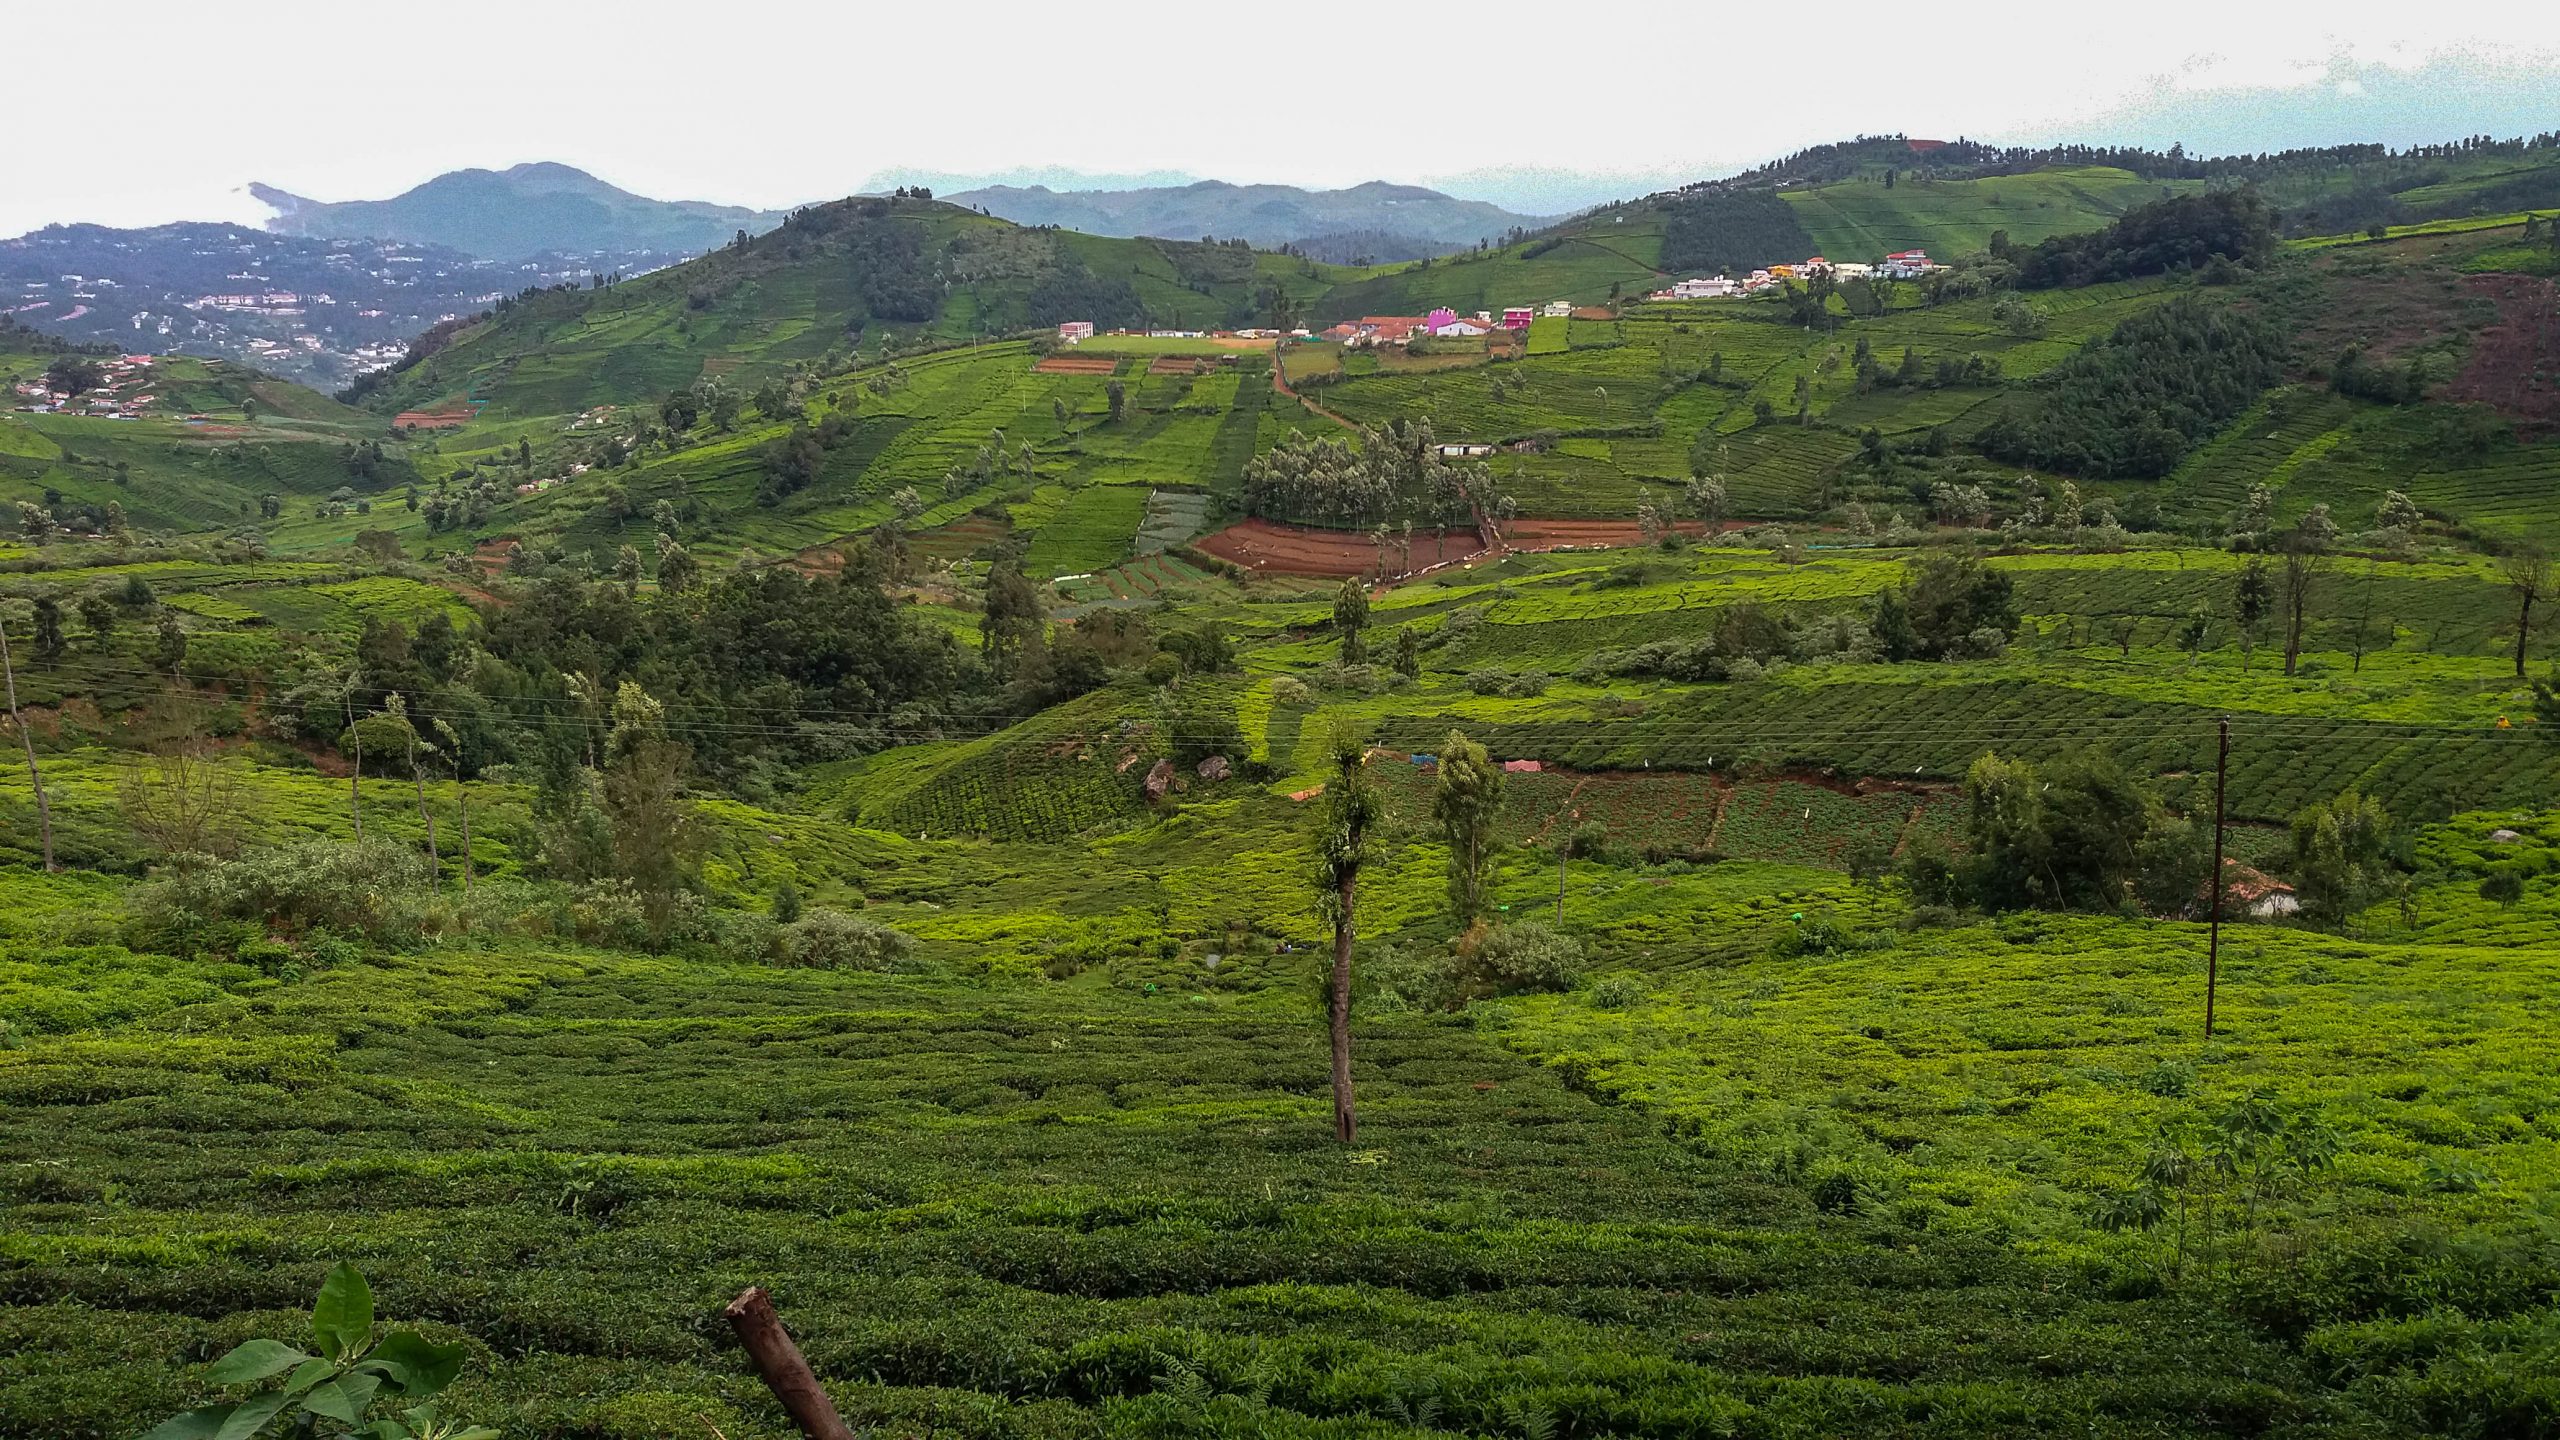 Kothagiri valley